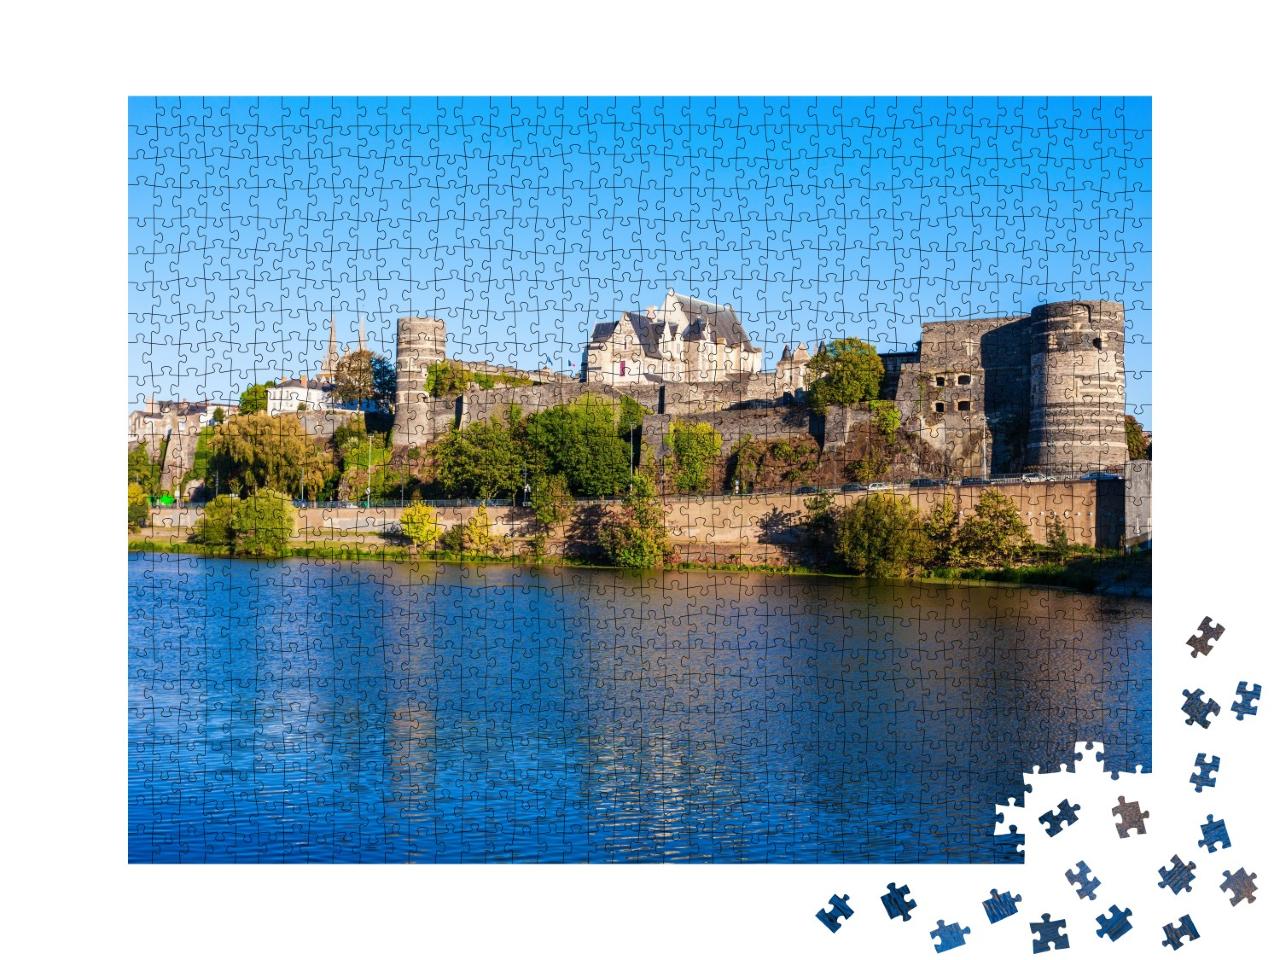 Puzzle de 1000 pièces « Château Angers dans la vallée de la Loire, France »